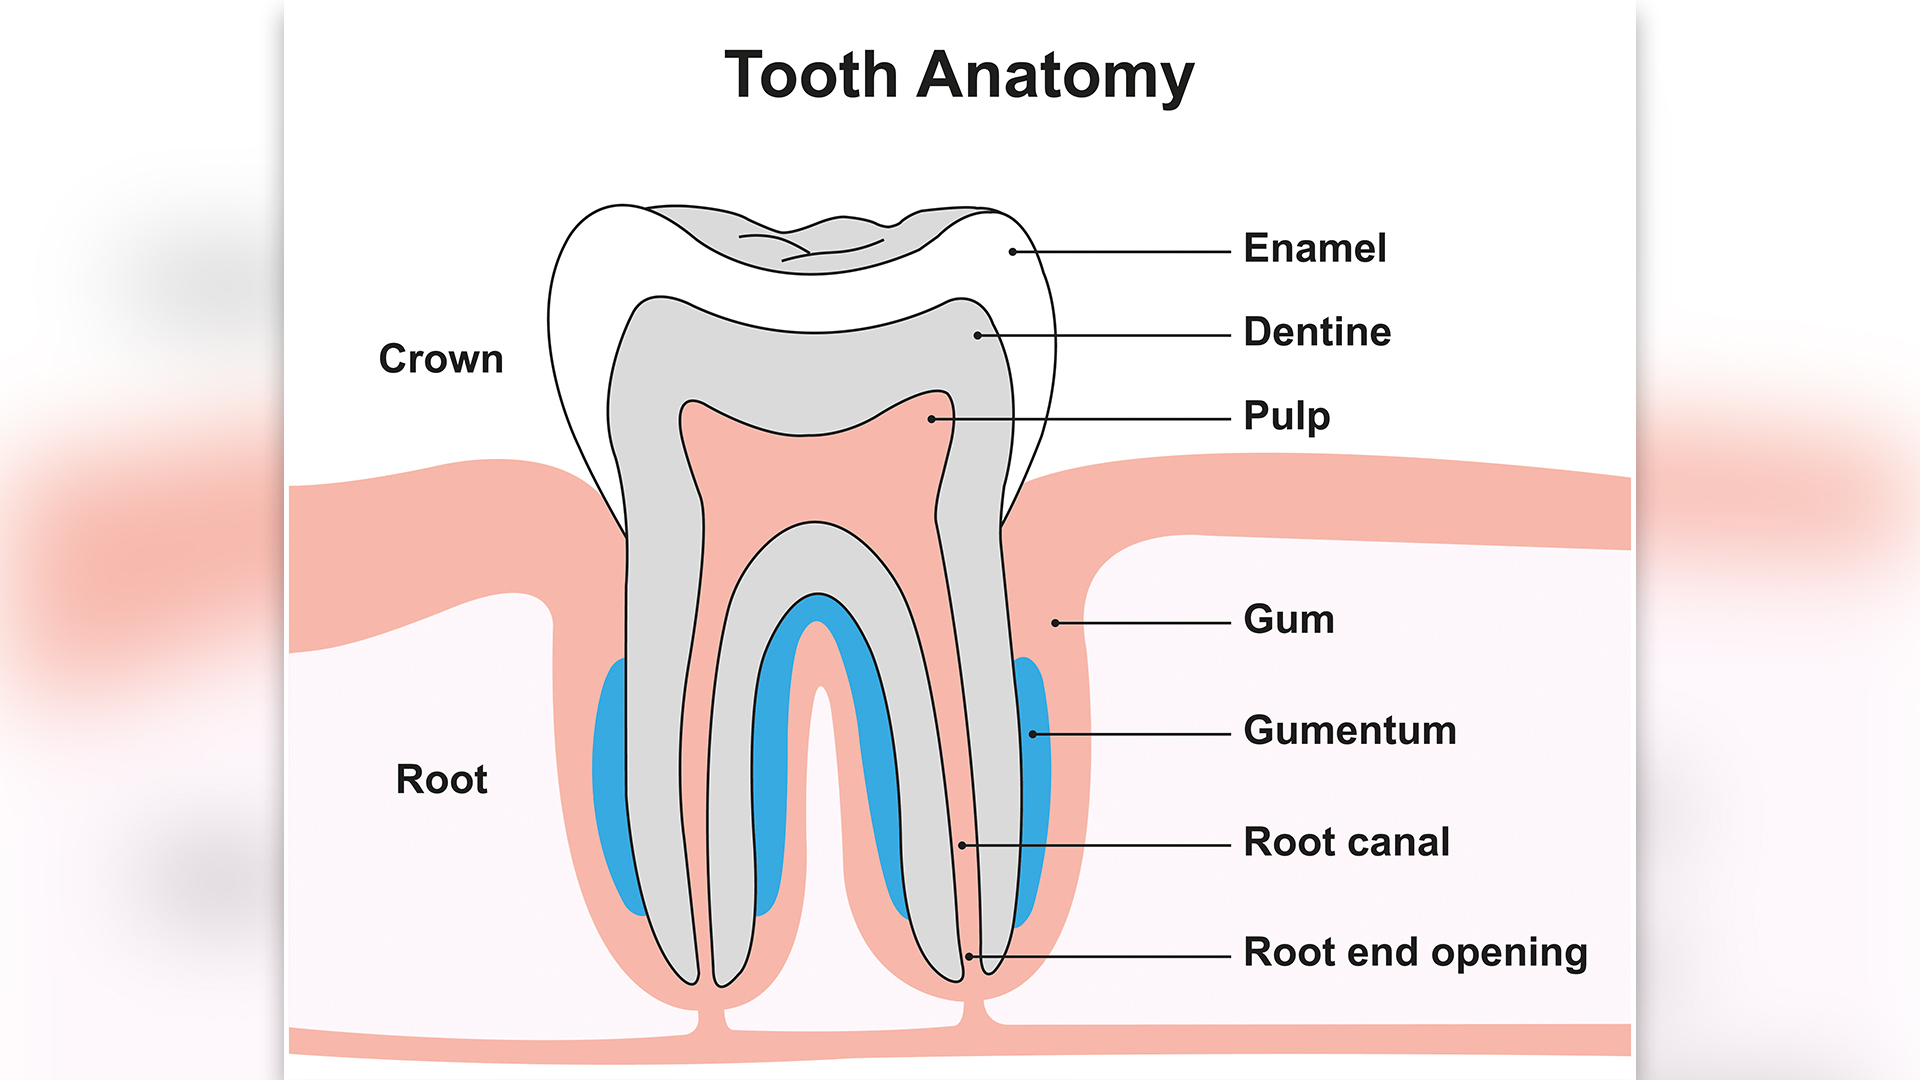 диаграмата показва анатомията на зъб, показан в напречно сечение, като емайлът е отбелязан върху короната на зъба